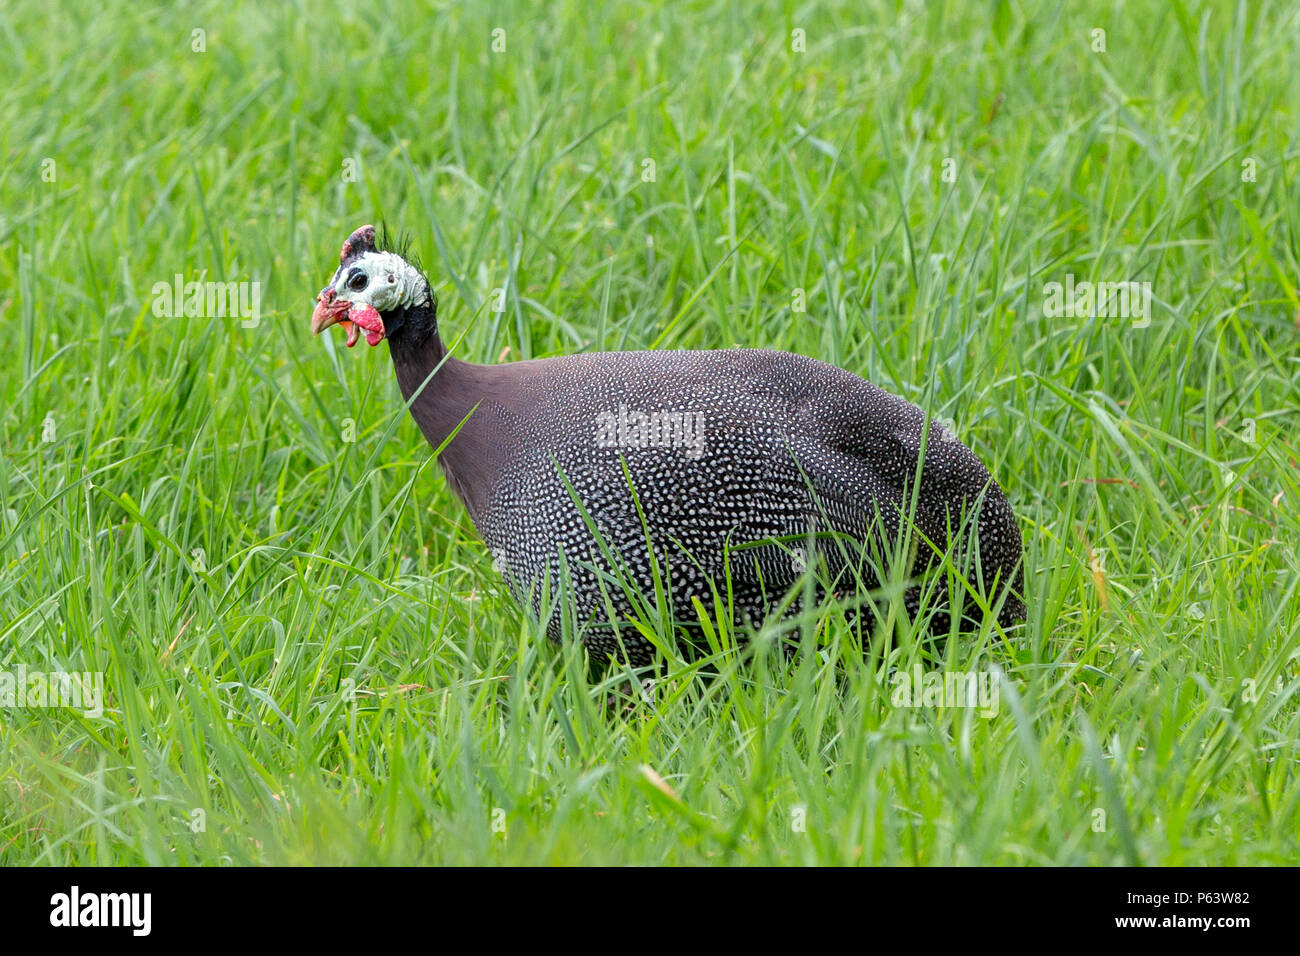 Animales de granja: un intervalo libre Guineafowl domesticados en una pradera de hierba verde. Foto de stock